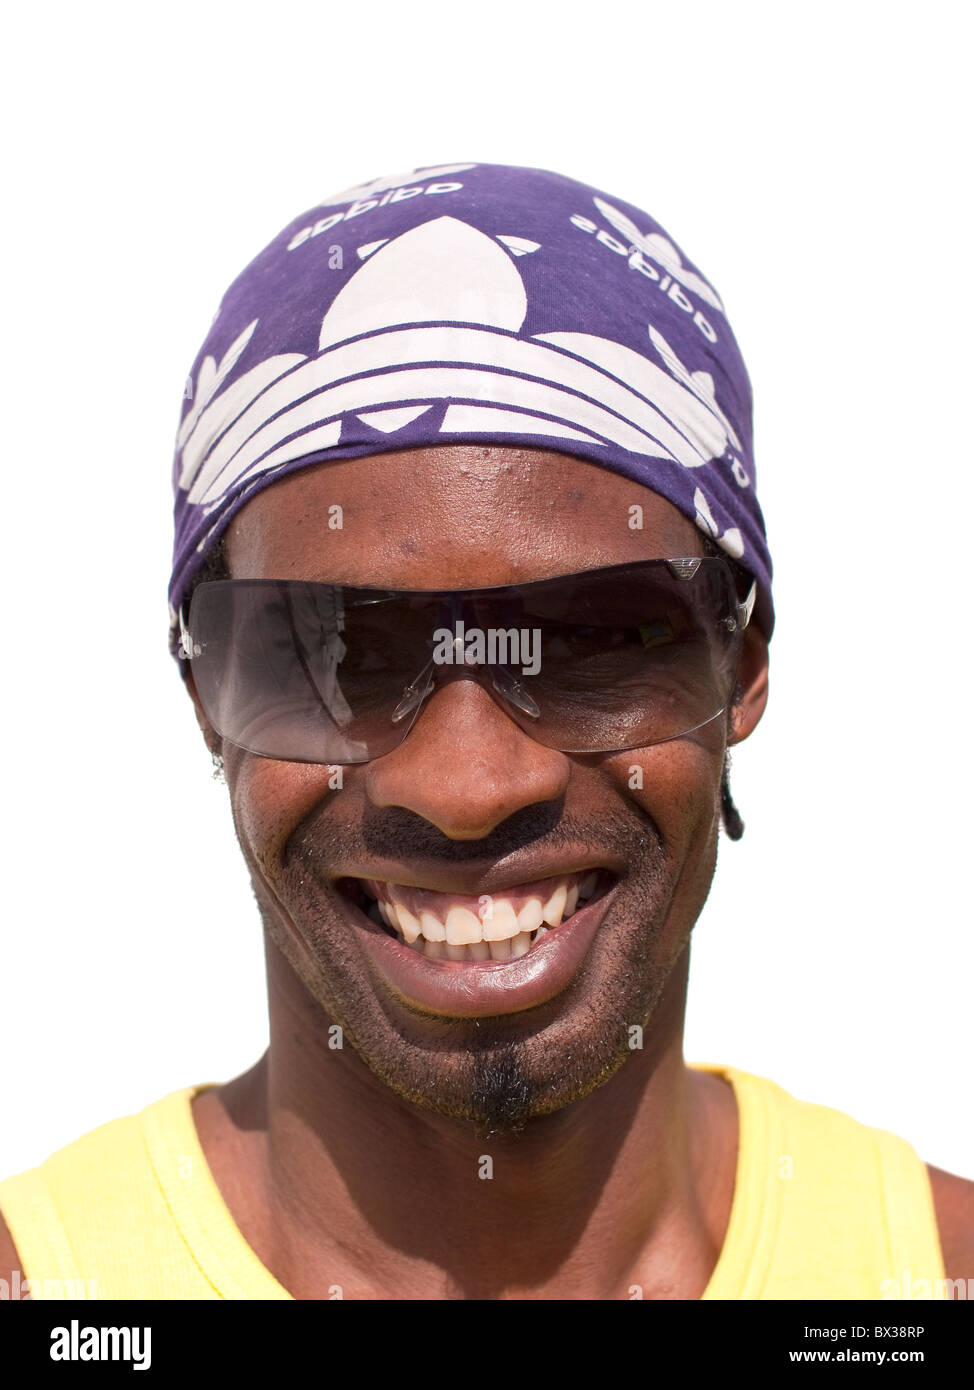 Booma Alter 40 aus Leeds, schwarze männliche Afro-Karibischen gelb-T-Shirt und lila Kopftuch tragen. Stockfoto